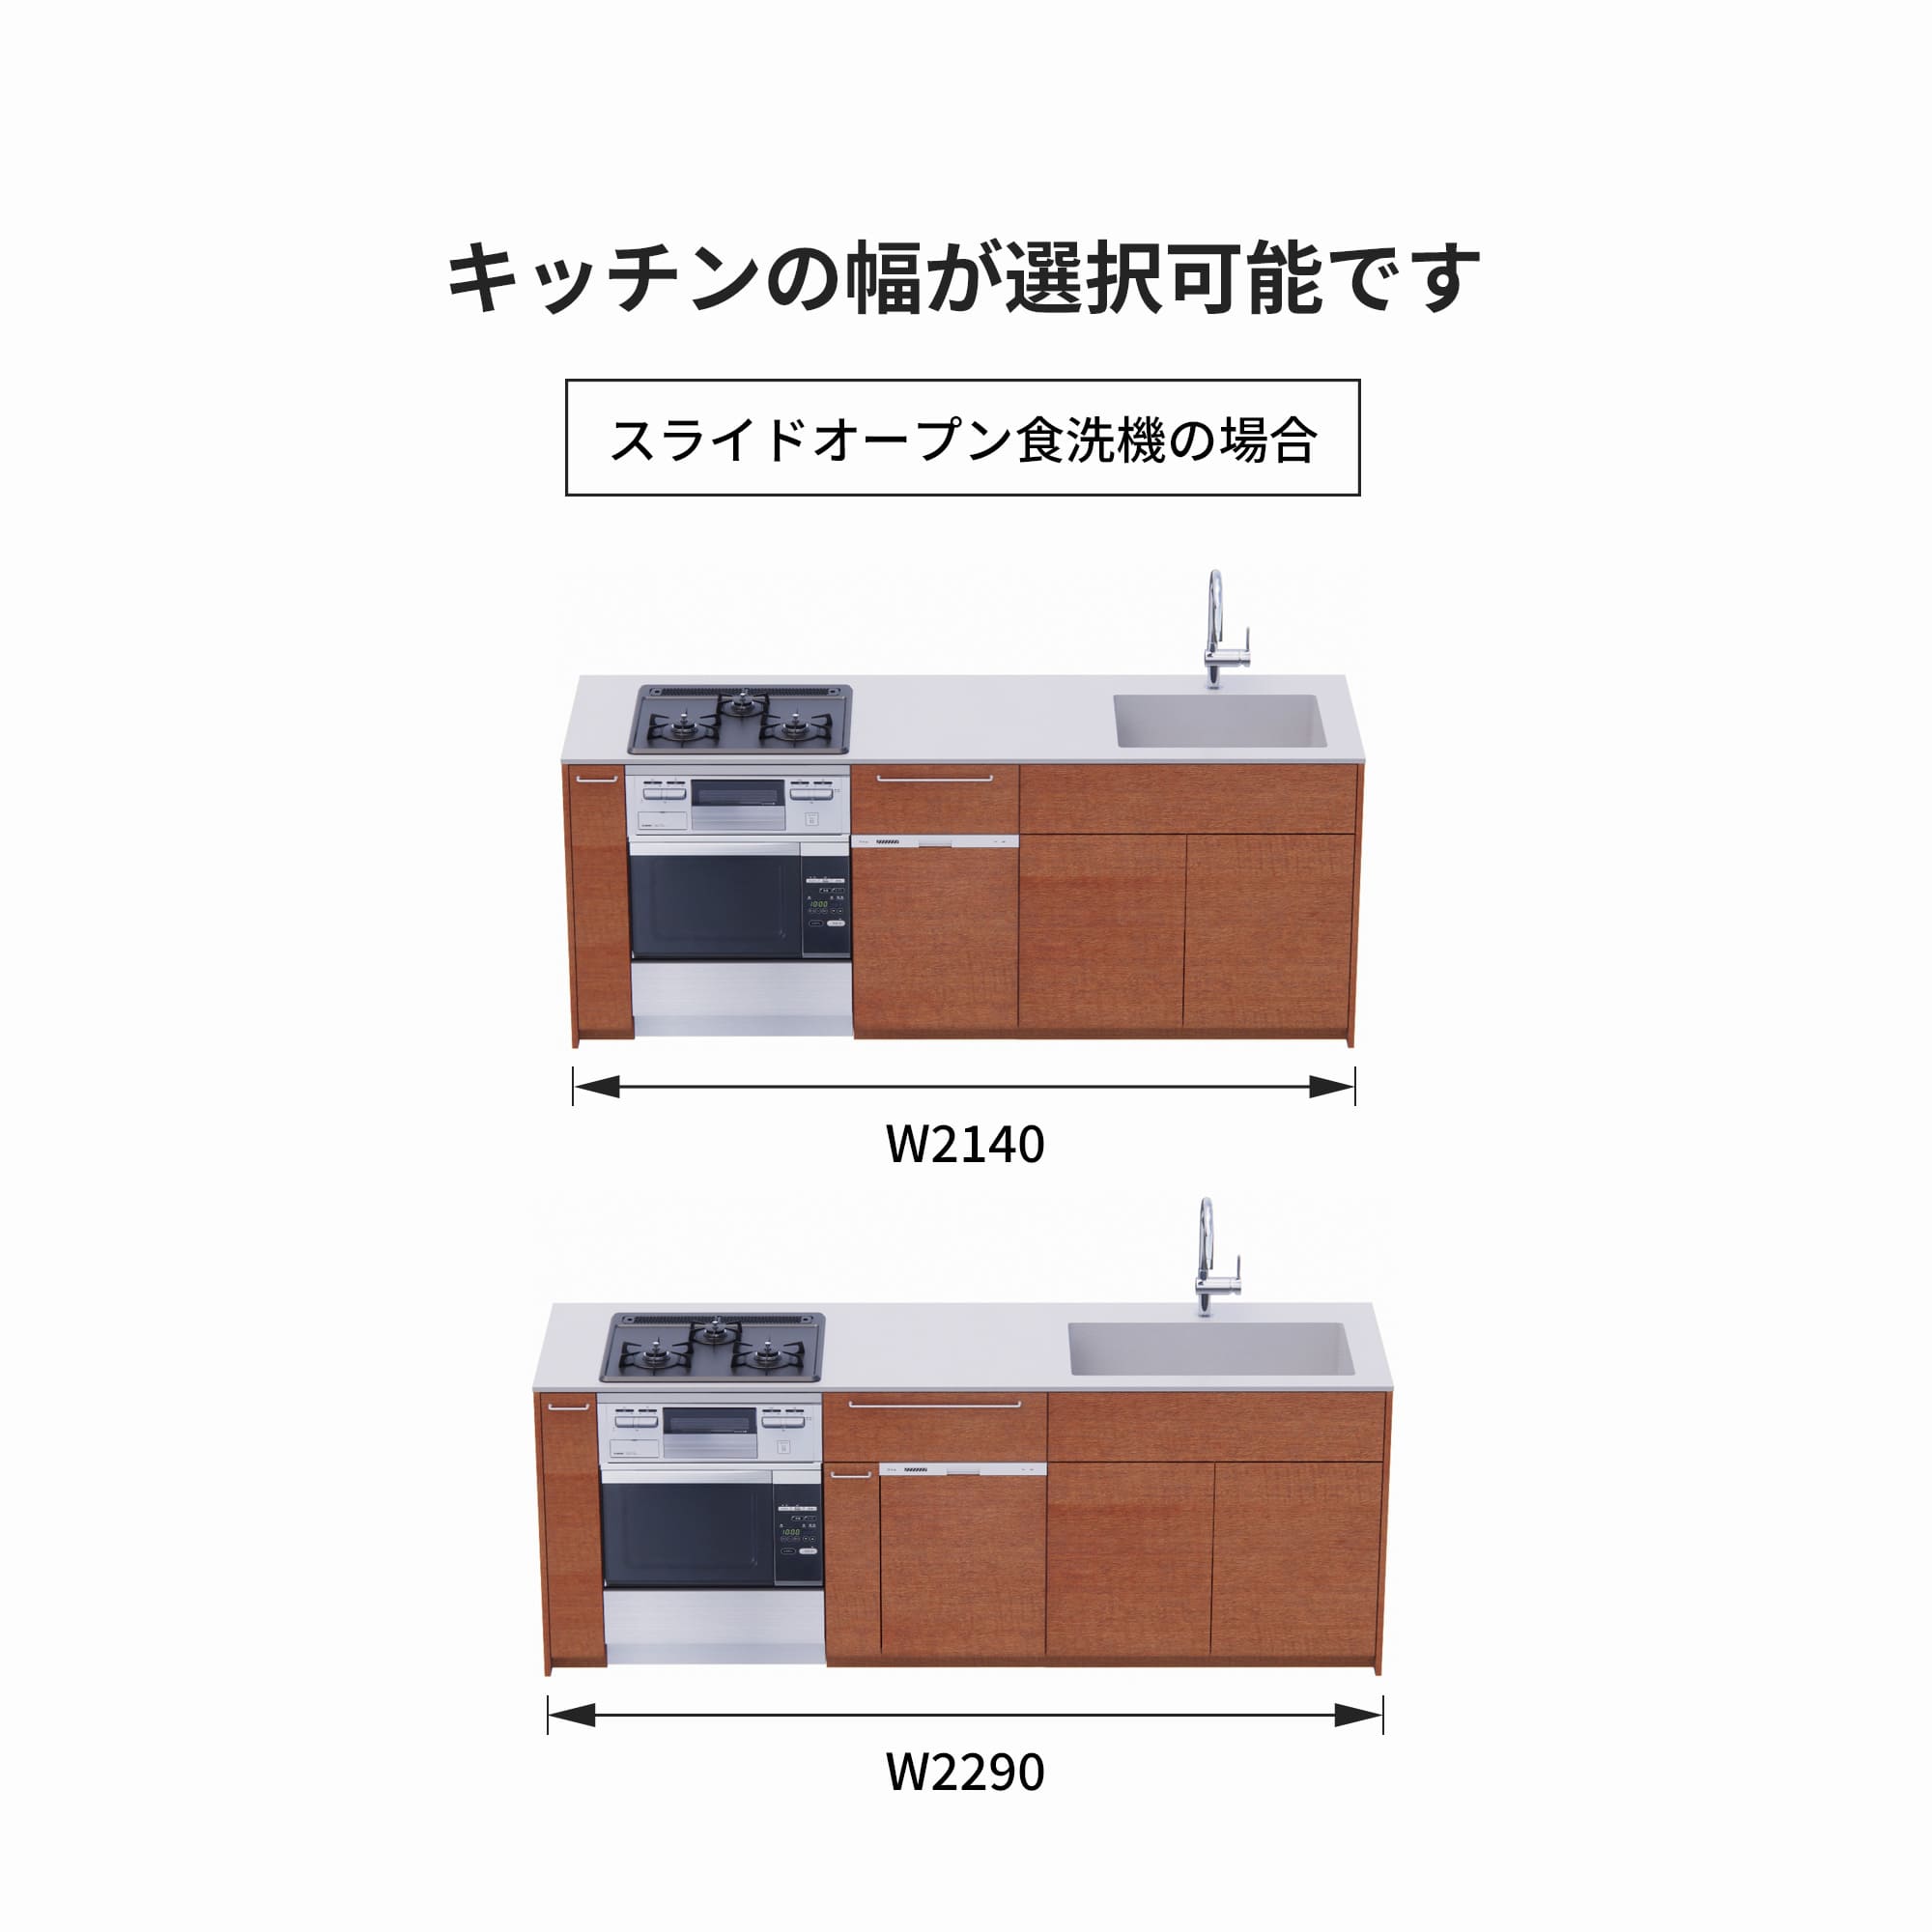 木製システムキッチン 壁付け型 W2140～2290・コンロあり / オーブンあり / 食洗機あり KB-KC022-22-G183 スライドオープンの場合